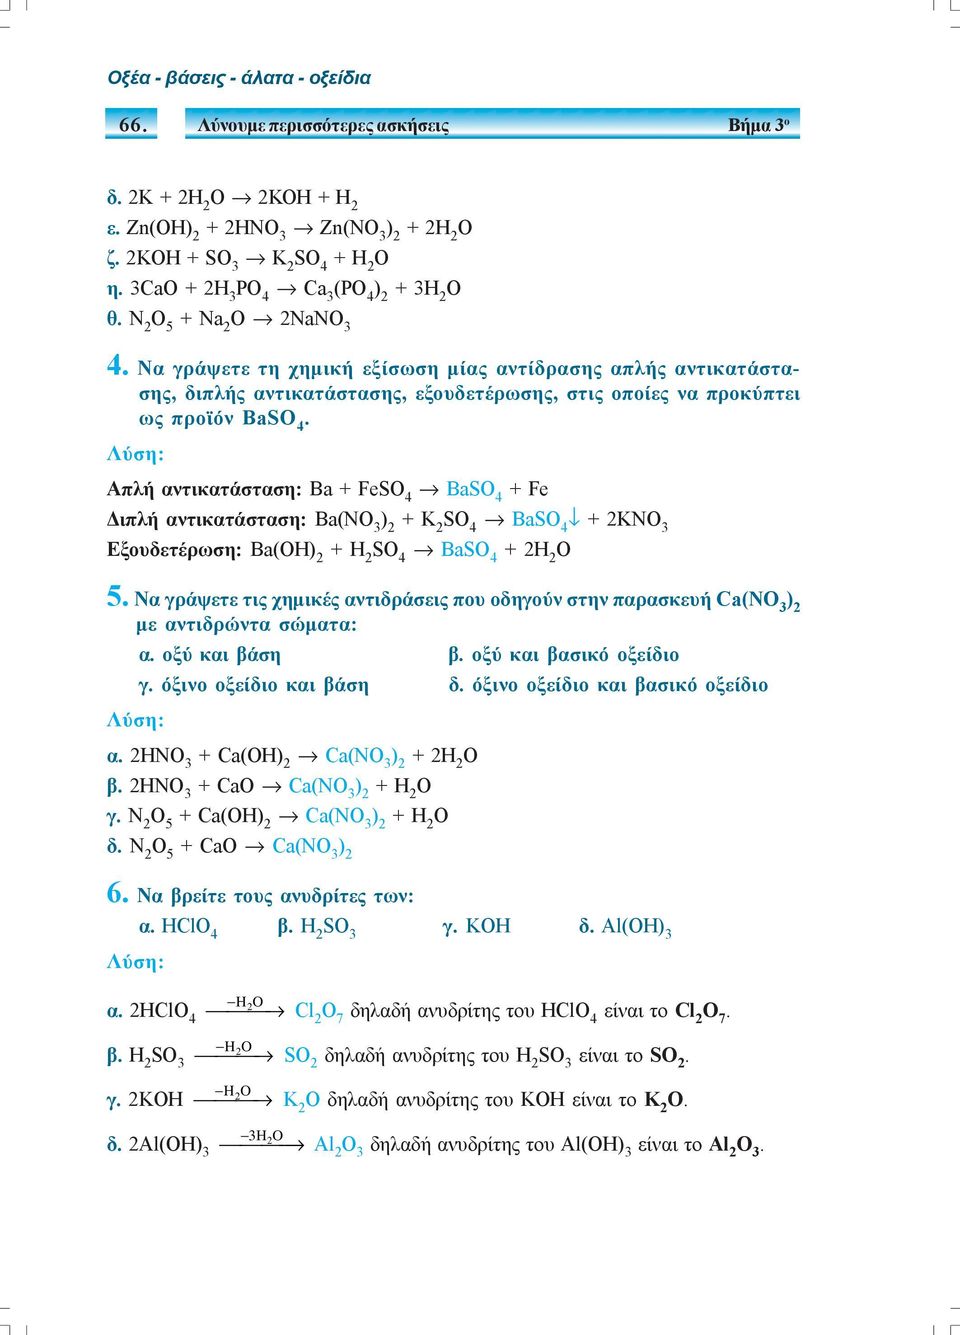 Λύση: Απλή αντικατάσταση: Βa + Fe Ba + Fe Διπλή αντικατάσταση: Βa(ΝΟ 3 + Κ 2 Ba + 2ΚΝΟ 3 Εξουδετέρωση: Βa(H Ba + 2H 2 5.